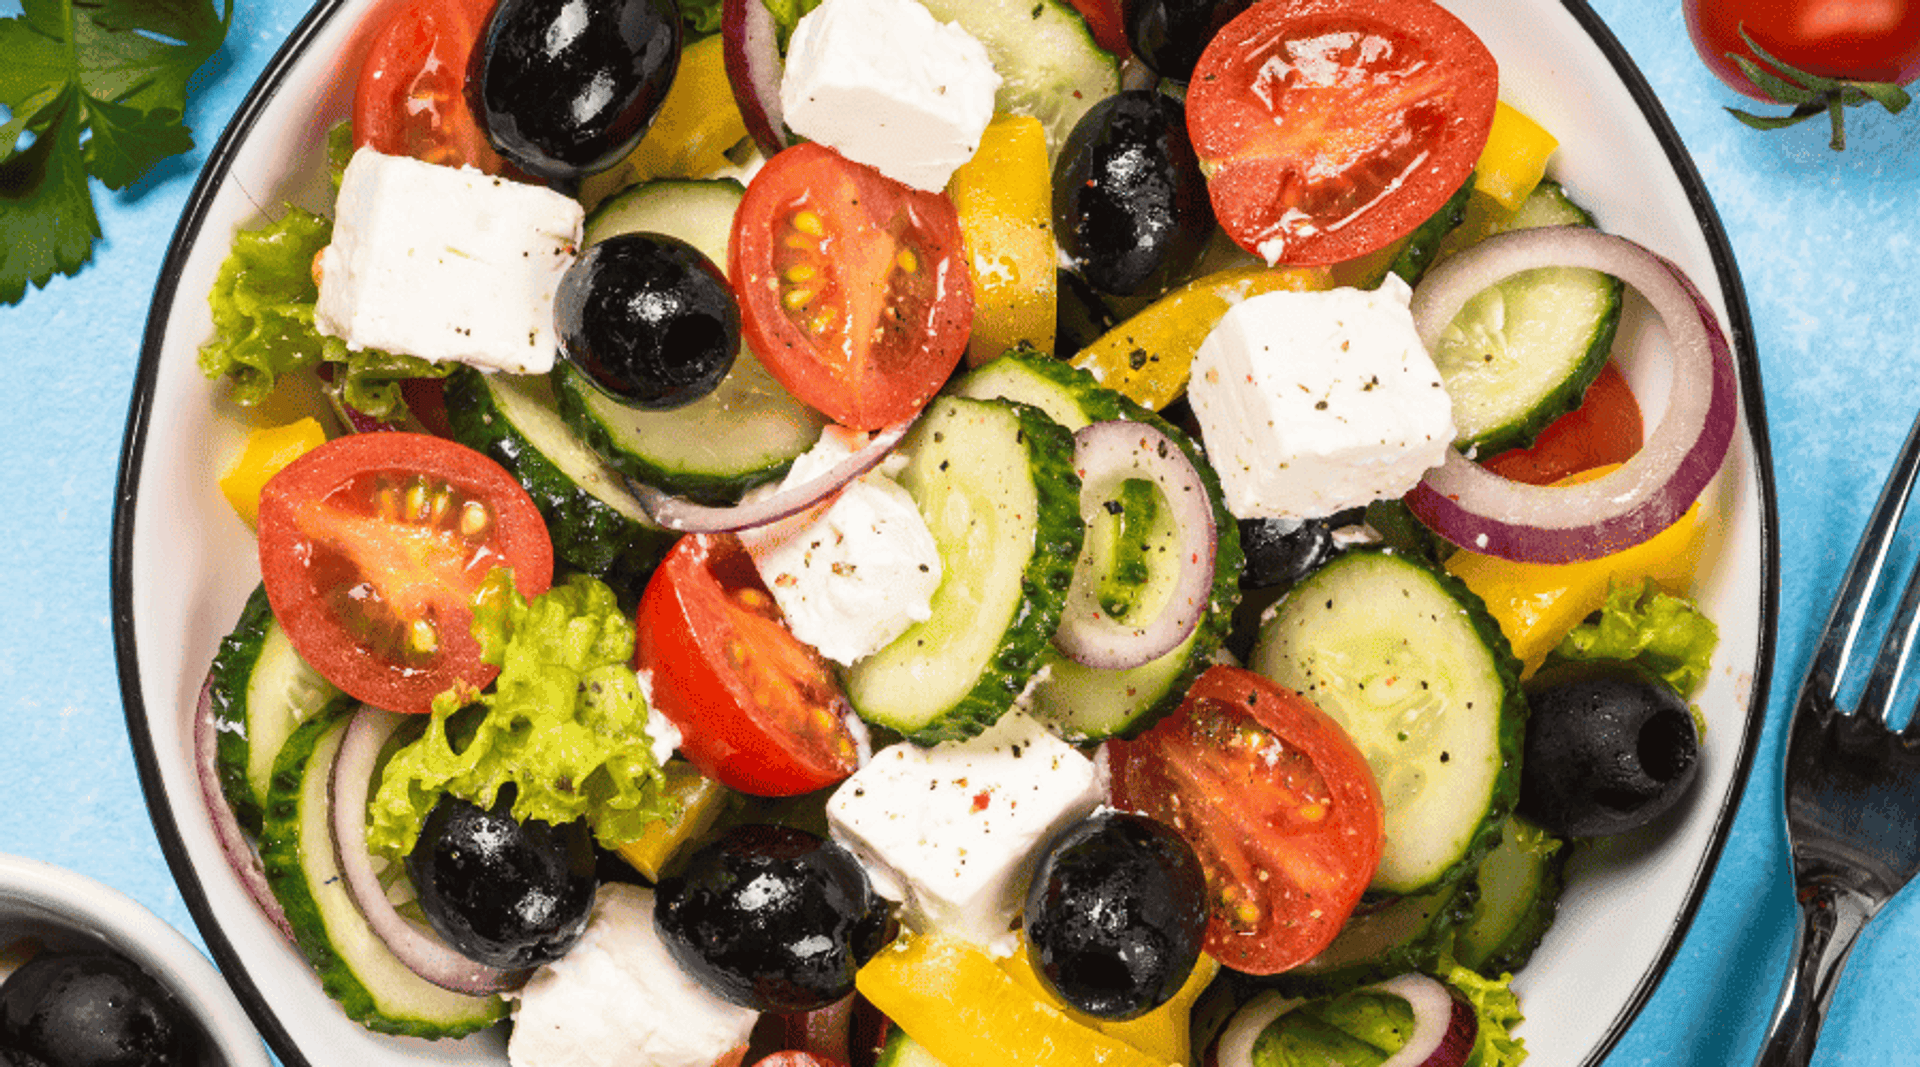 Jakie składniki dodać do sałatki greckiej?